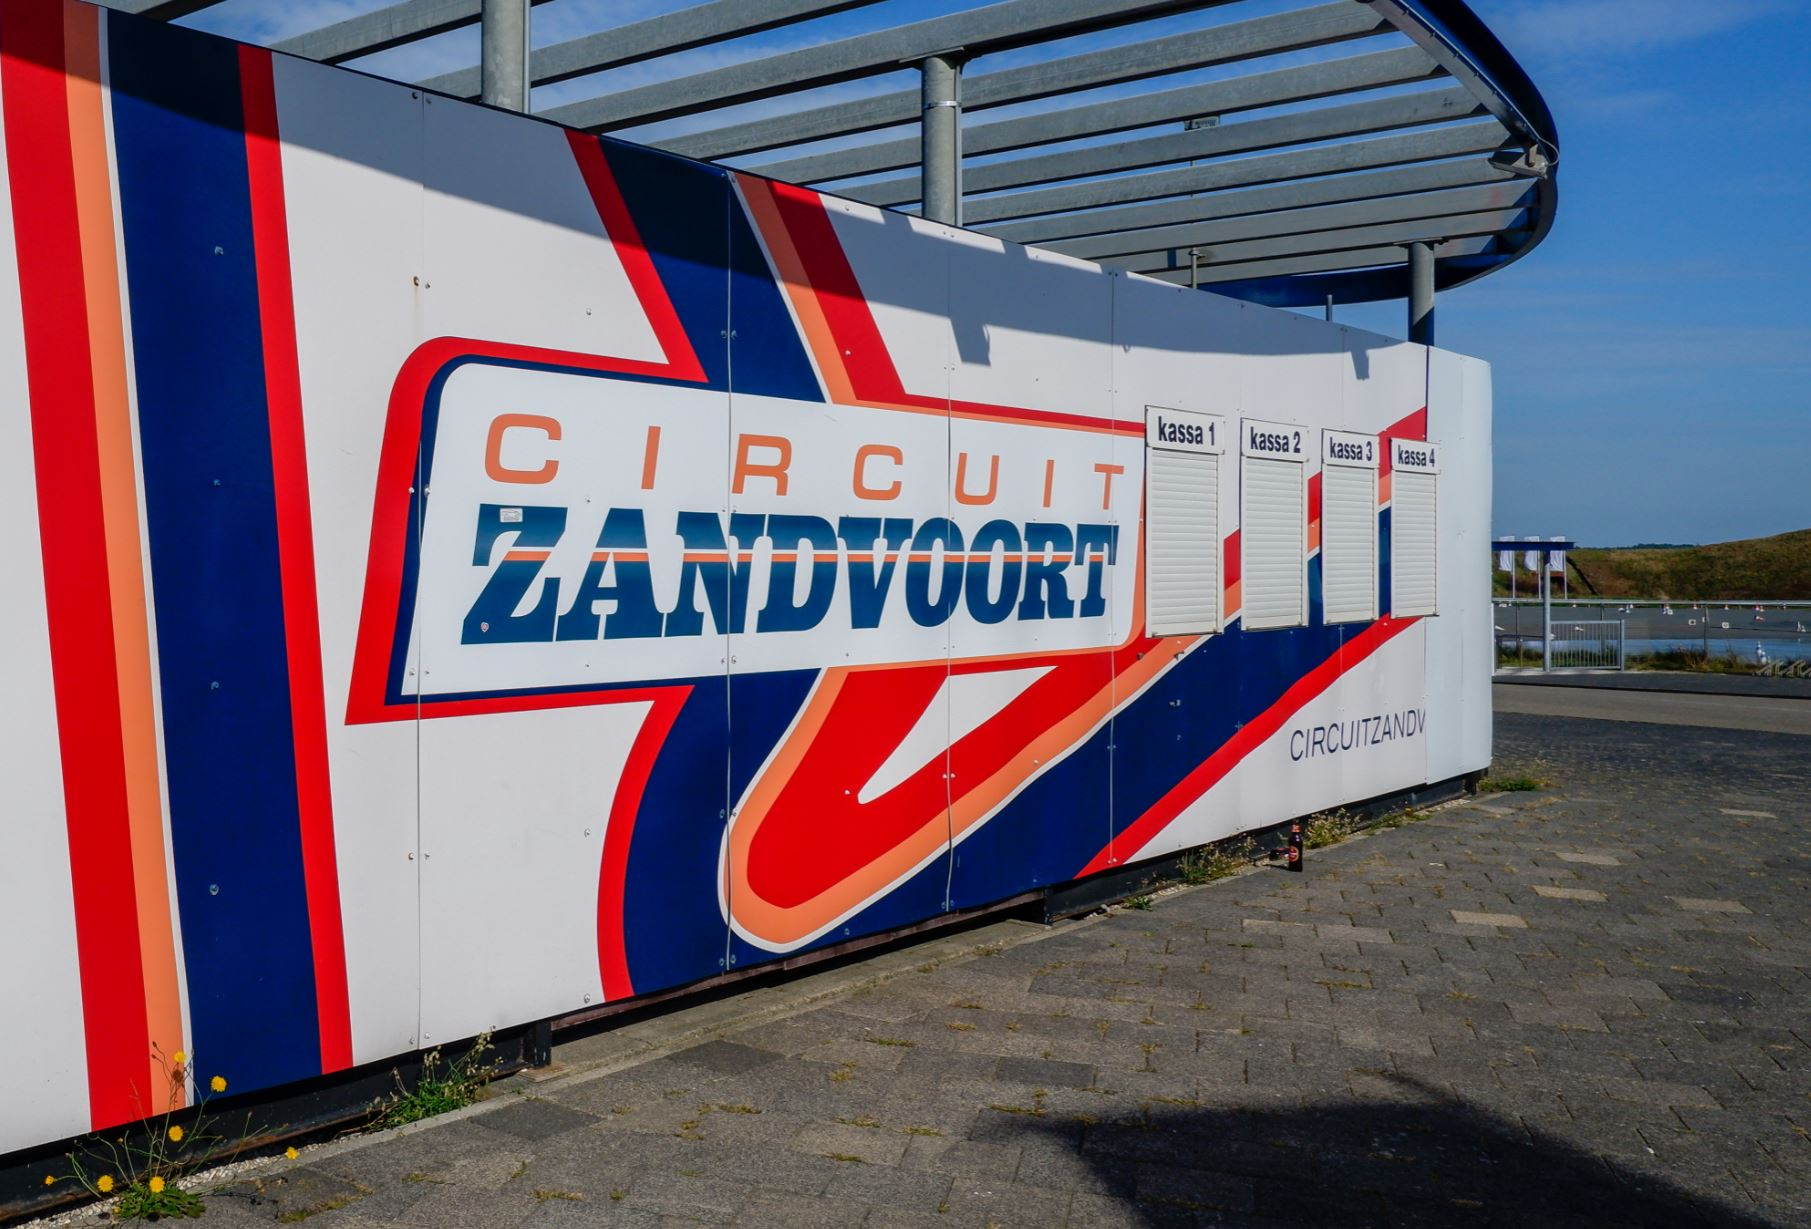 zandvoort-circuit.jpg